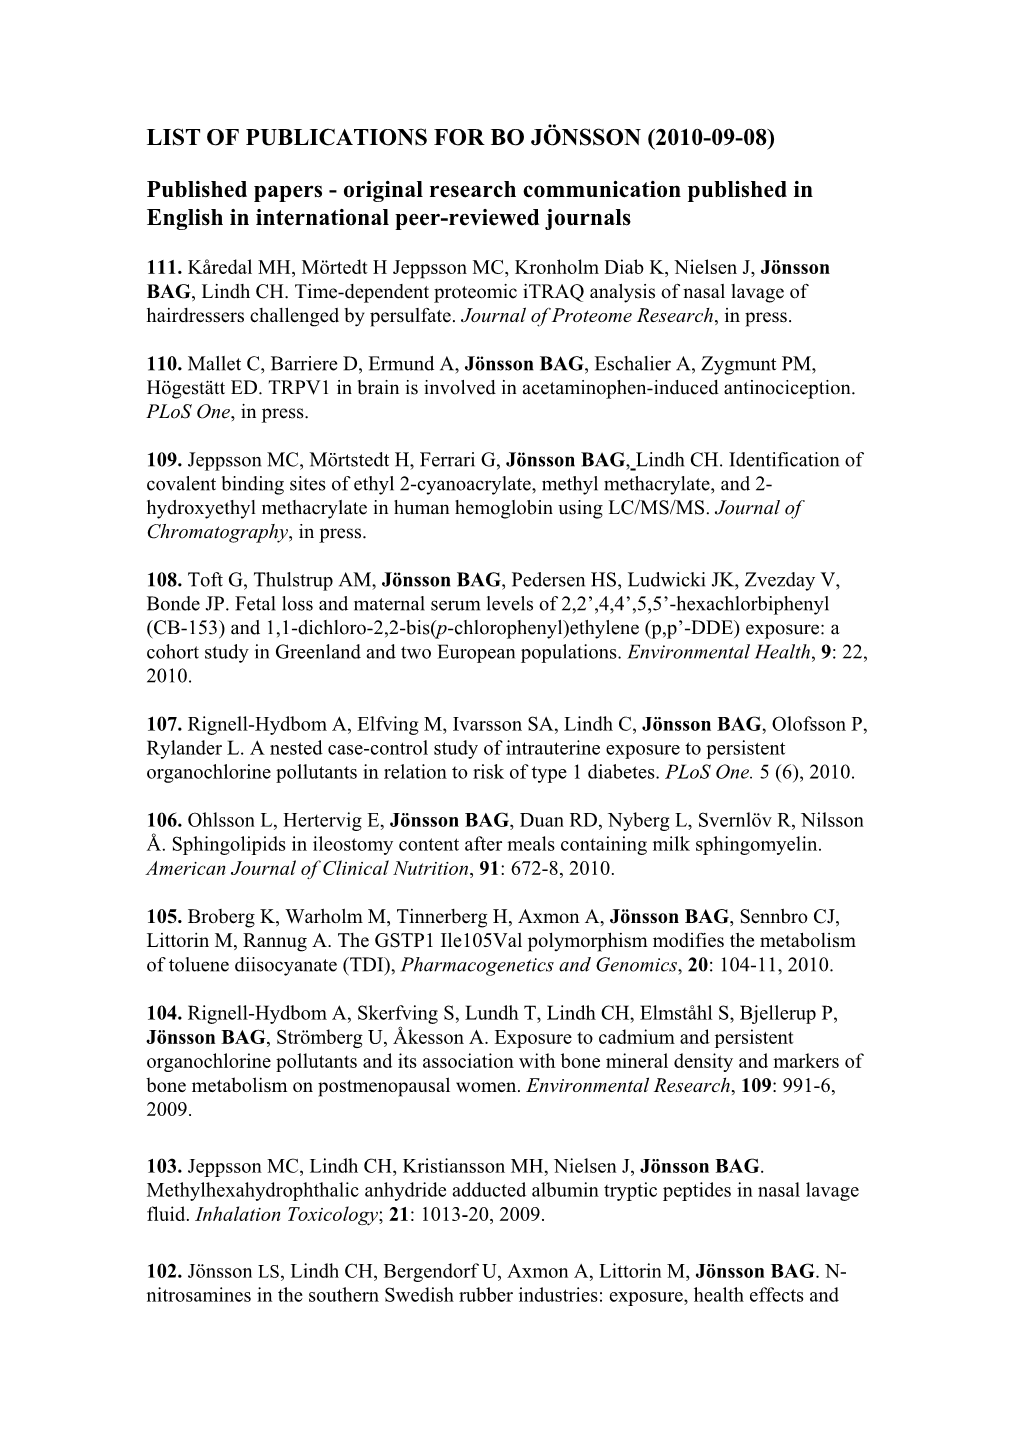 List of Publications for Bo Jönsson (2010-09-08)